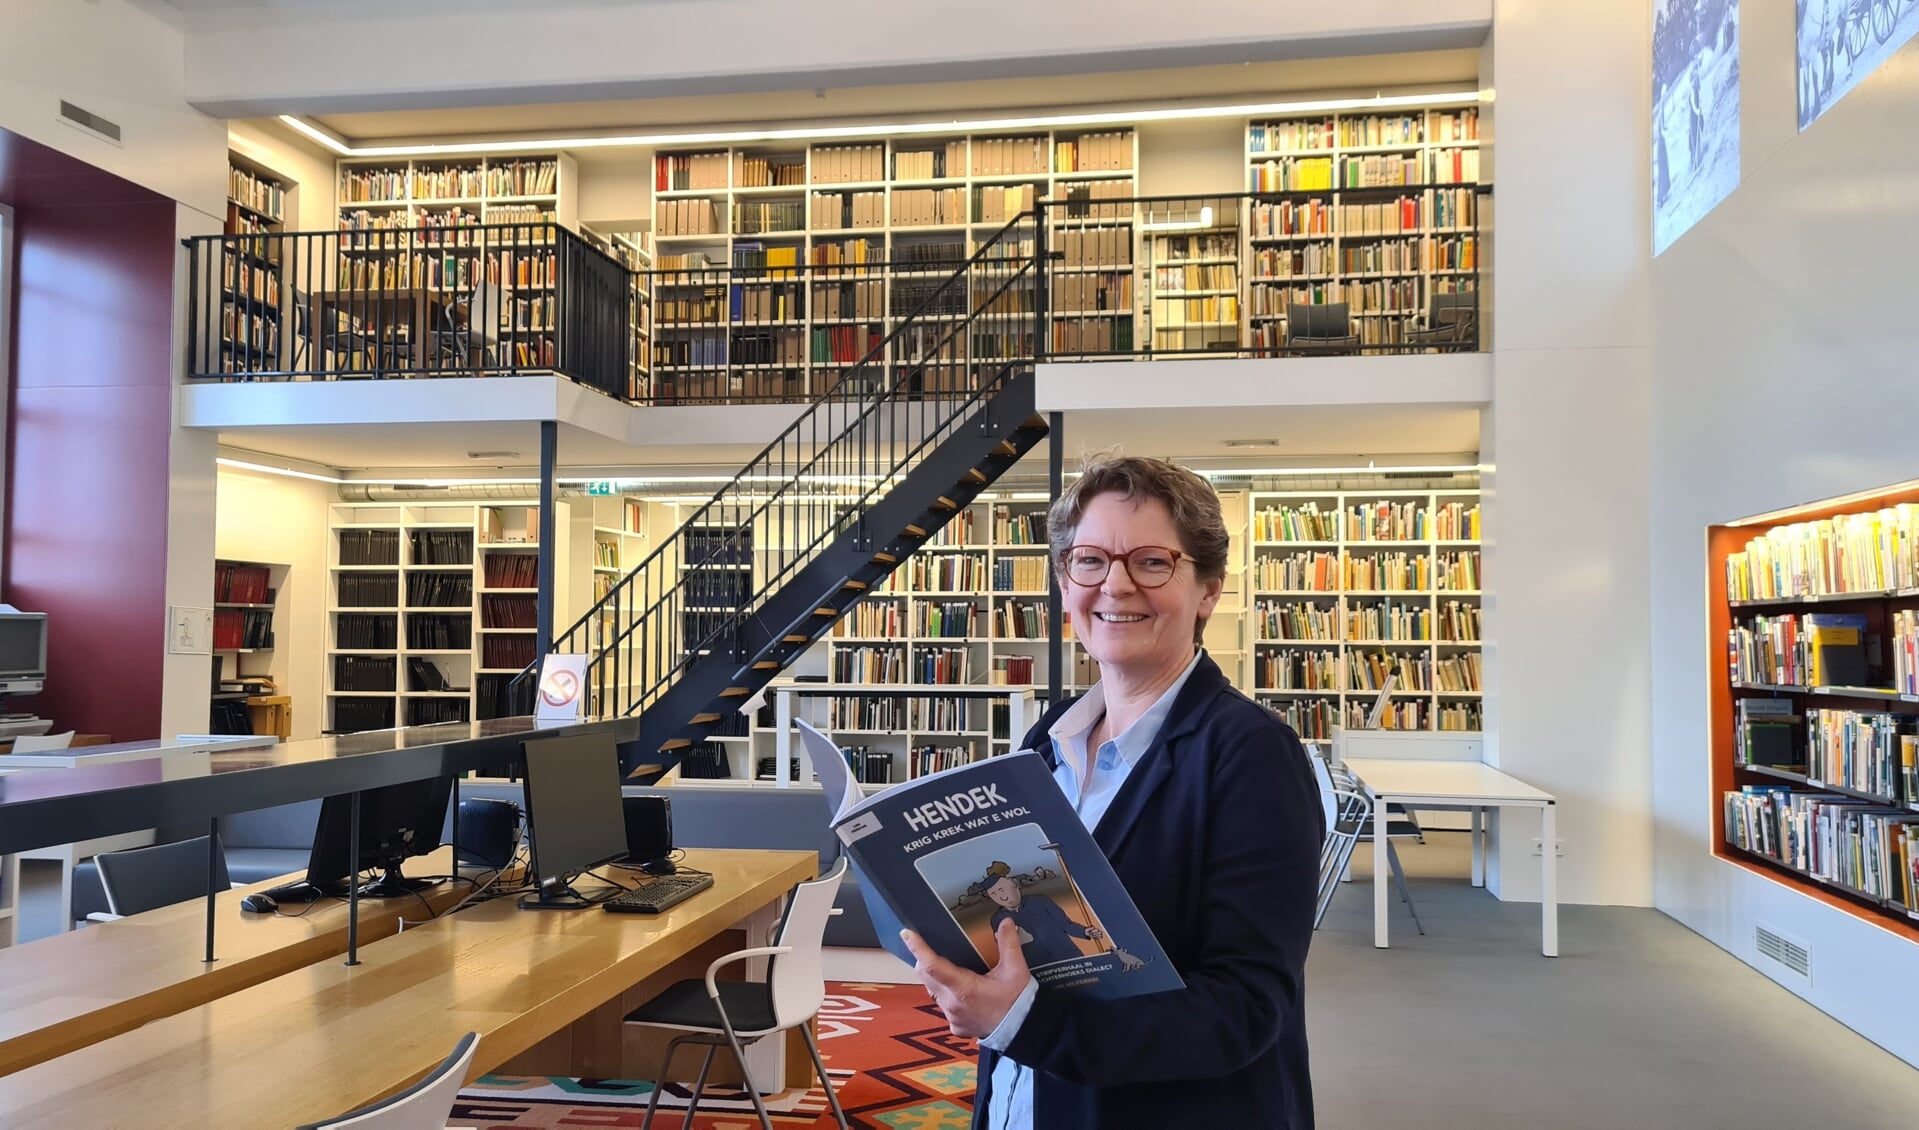 Boeken inde streektaal zijn populair weet weet Femia Siero, directeur van Erfgoedcentrum Achterhoek en Liemers. Foto: Marije Stomps